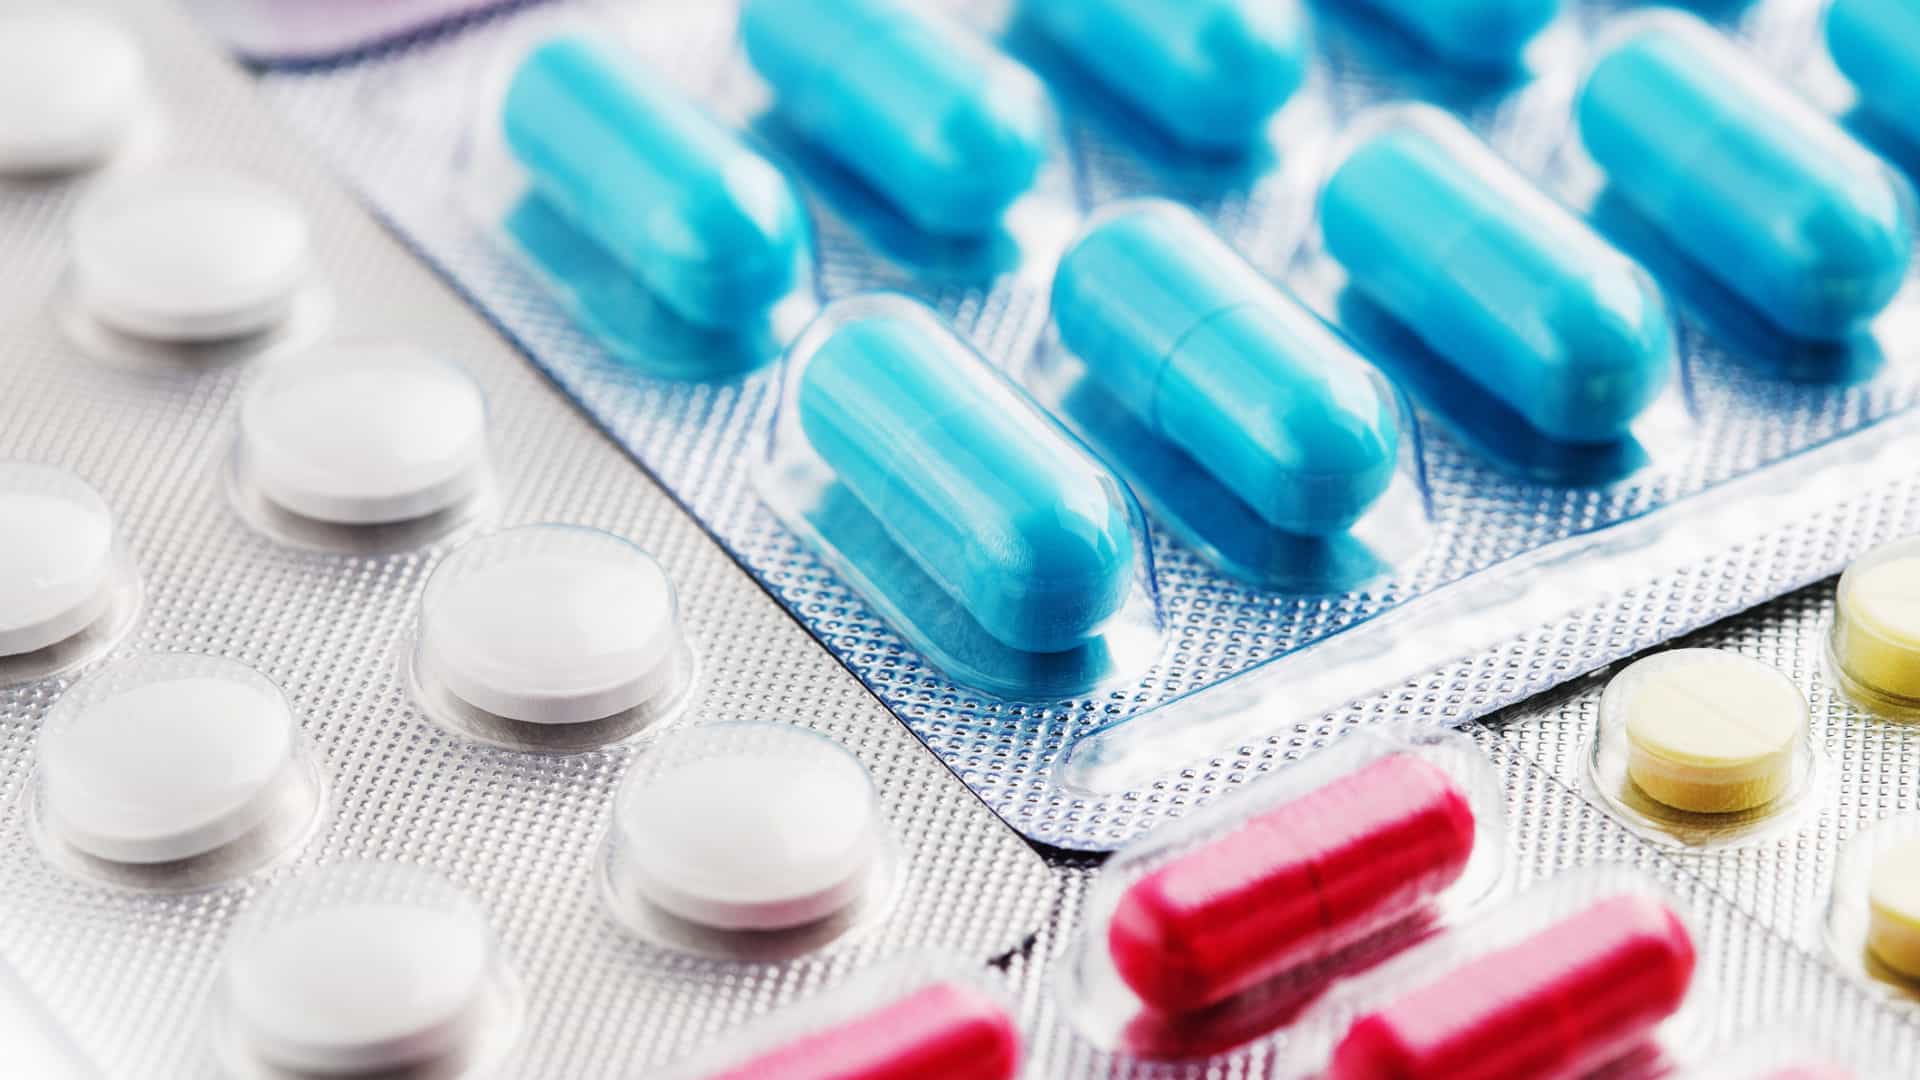 Governo autoriza aumento de até 4,33% no preço de medicamentos